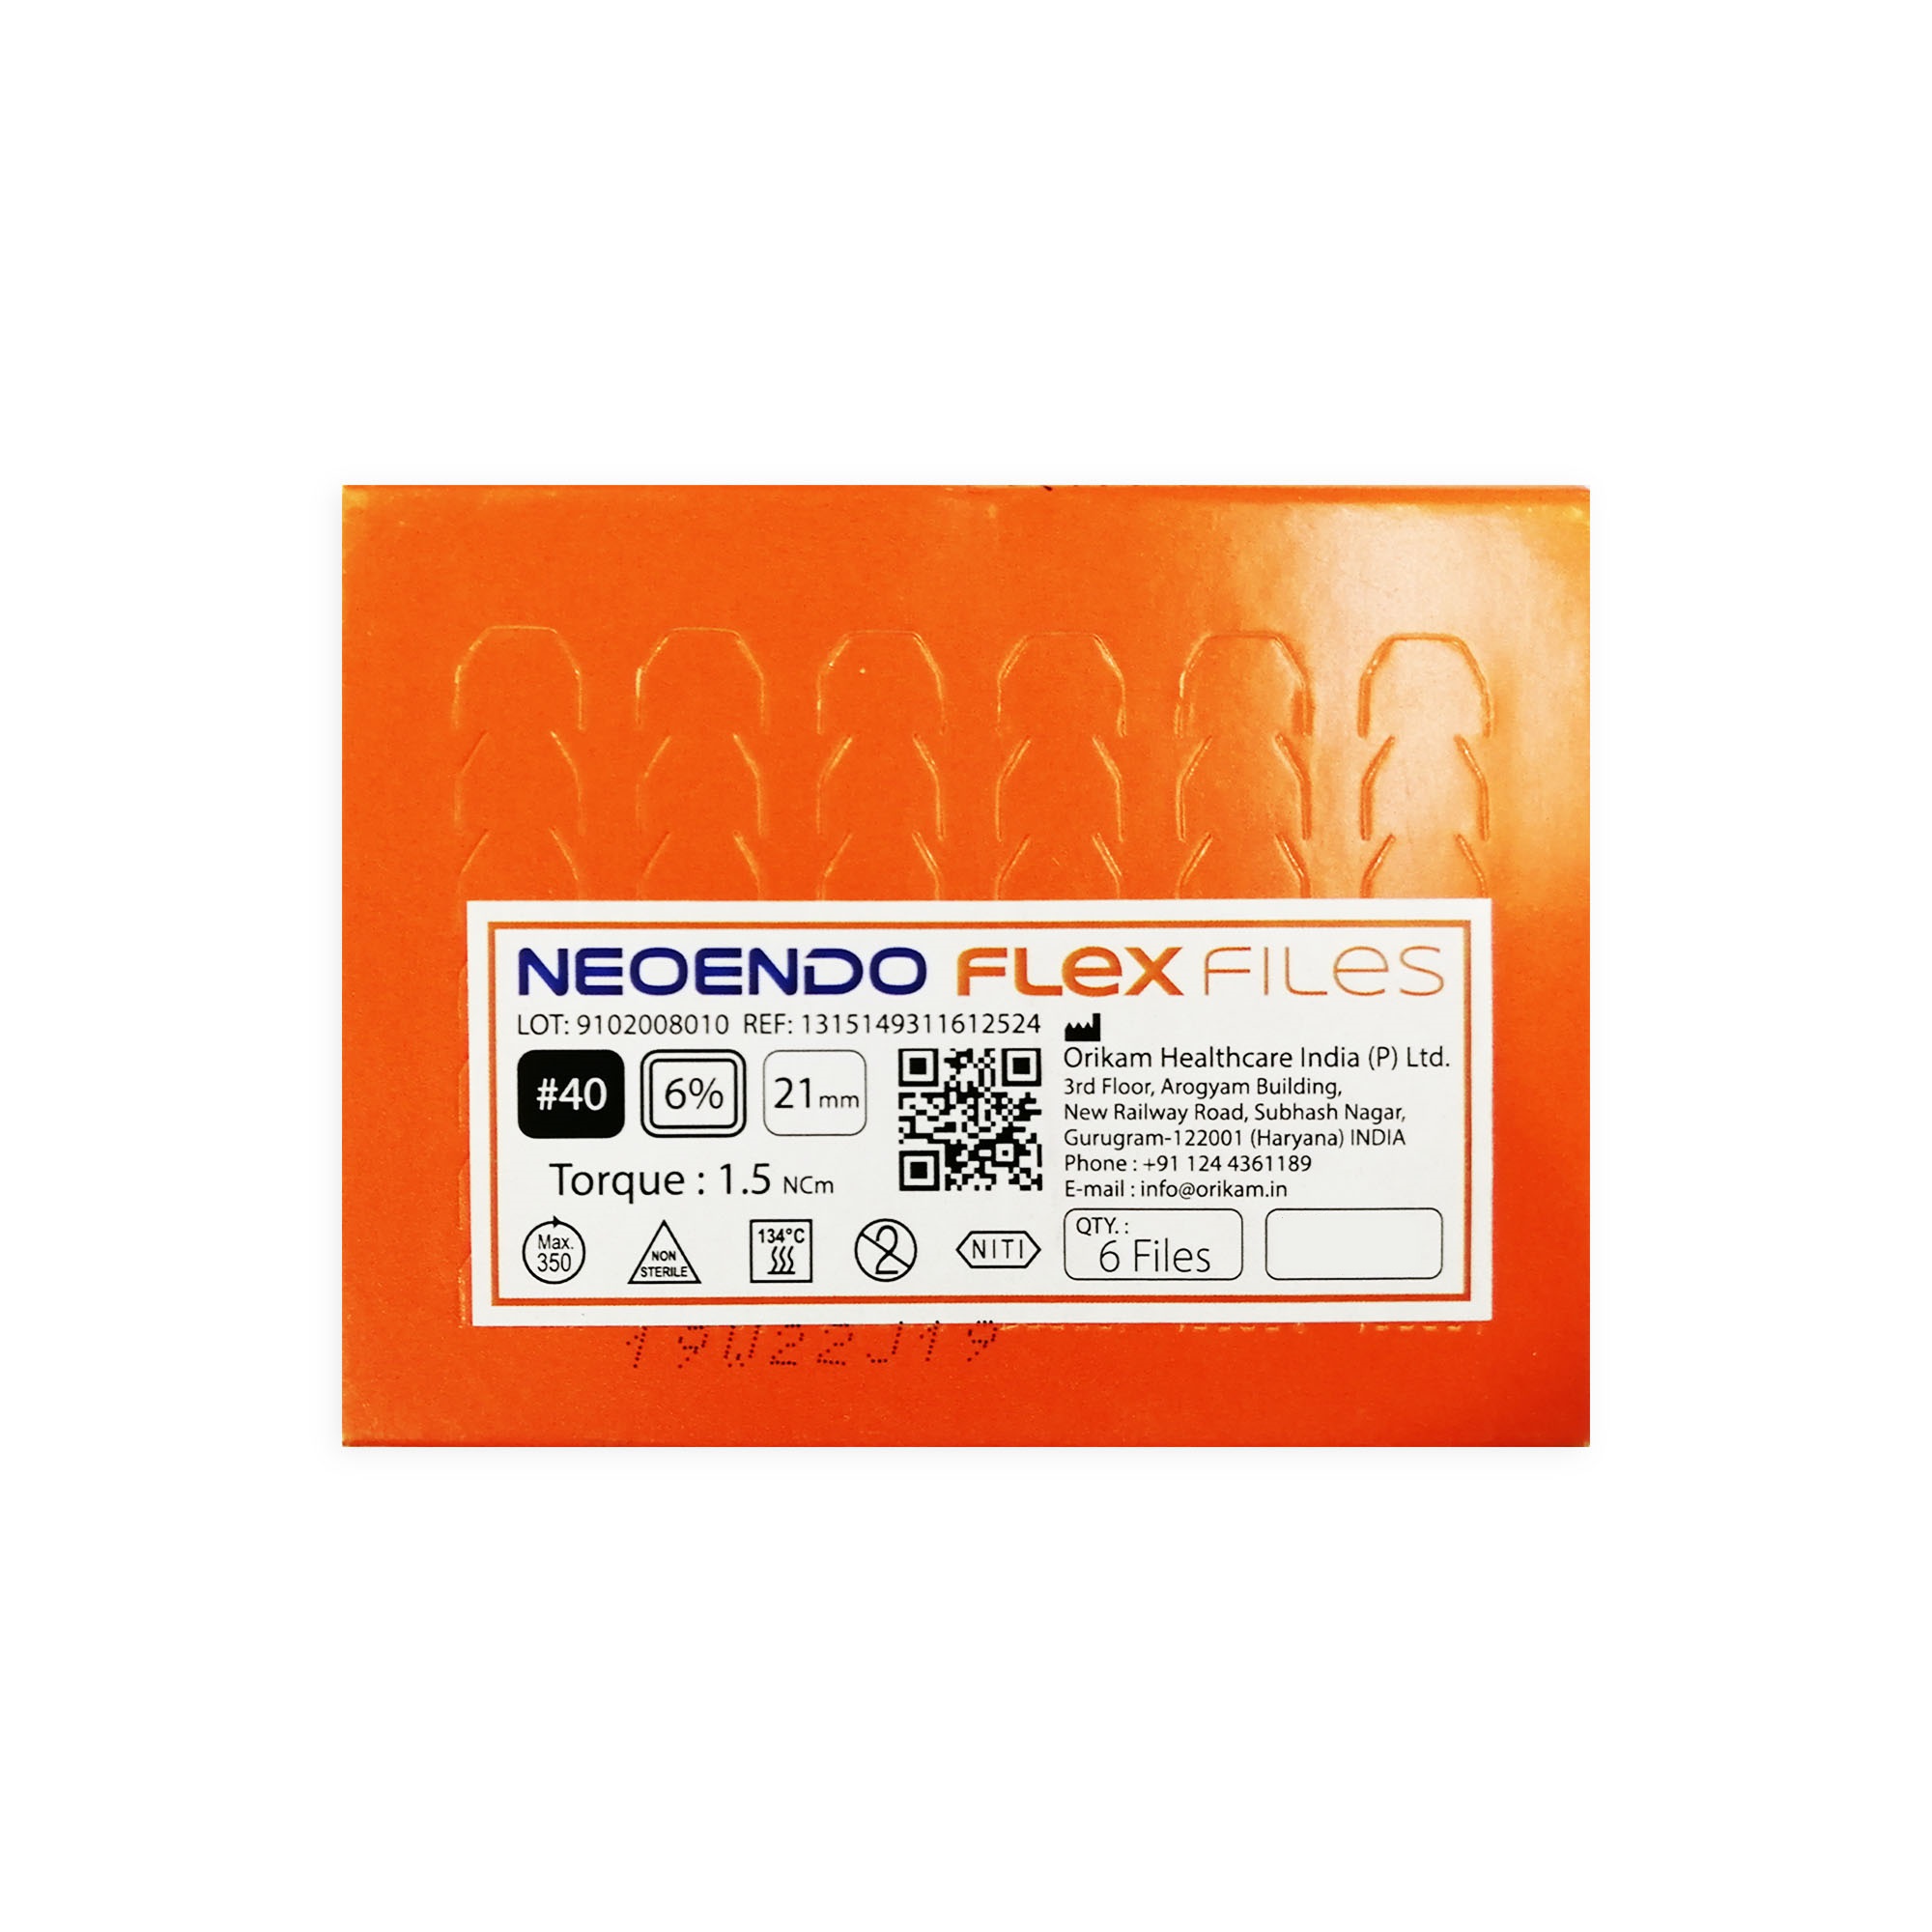 NeoEndo Flex Files 21mm 30/4 Endo Rotary Files